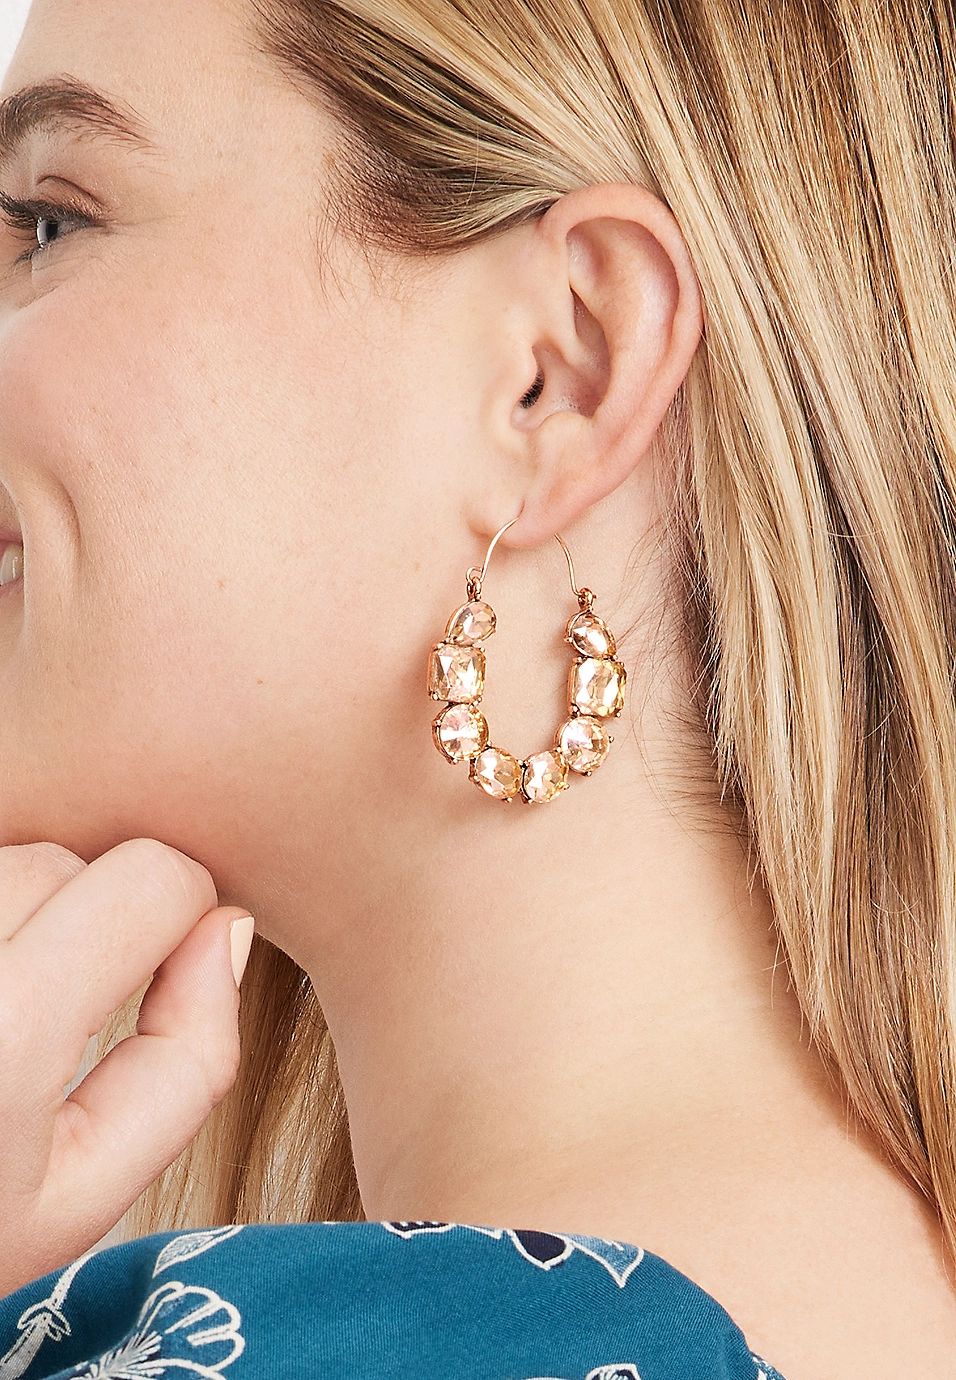 Gold Rhinestone Hoop Earrings | Maurices